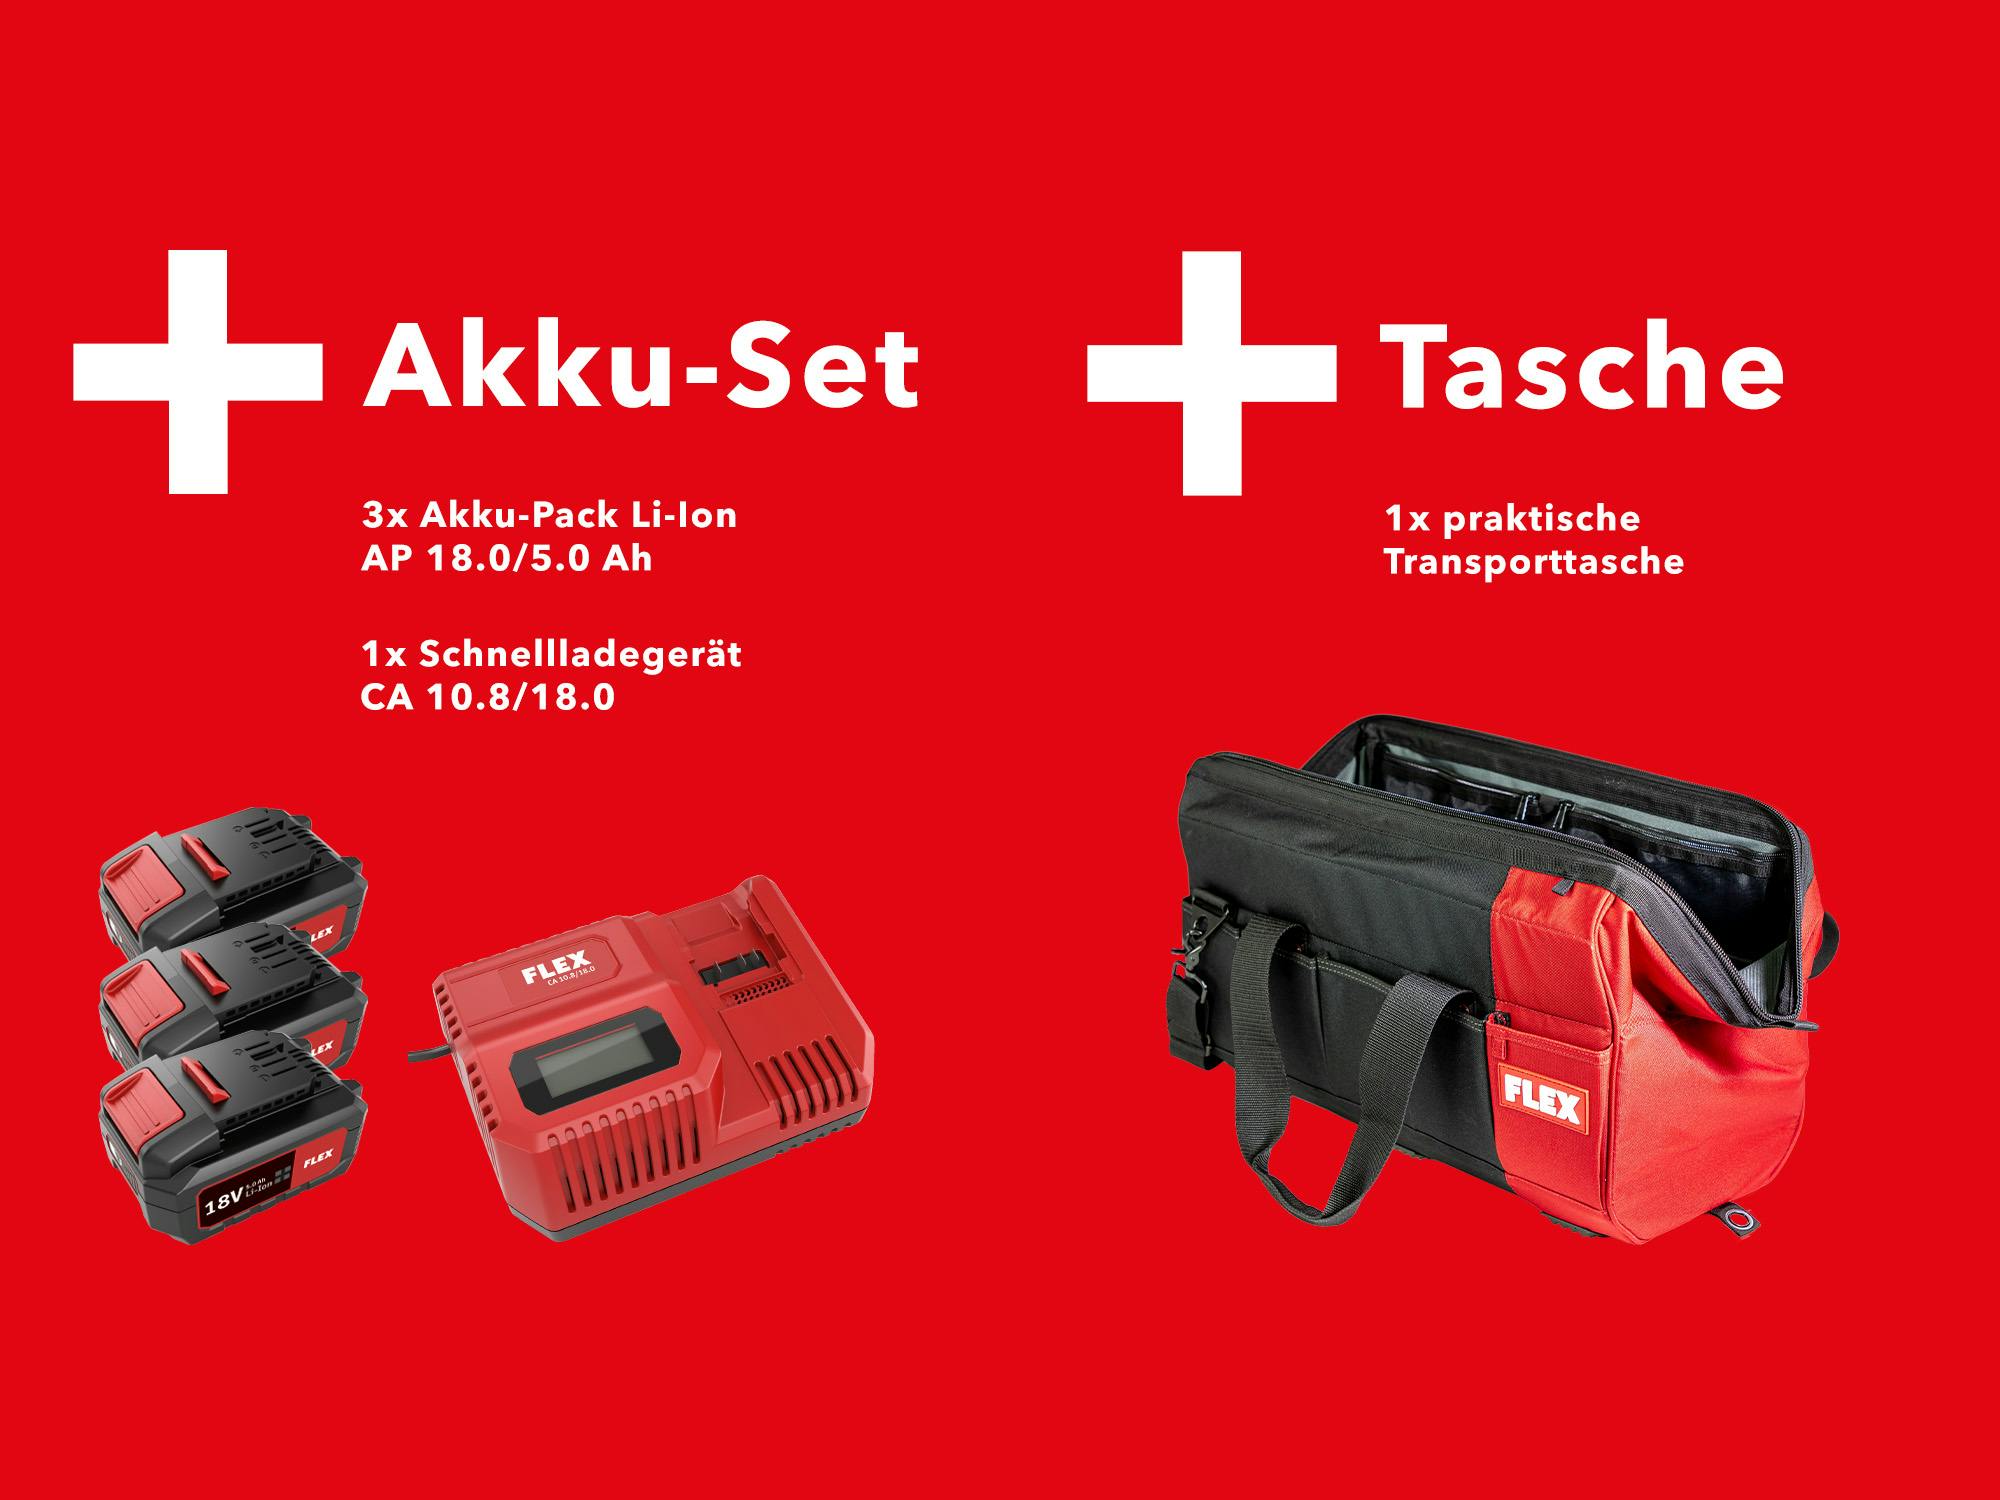 Flex Akku Werkzeug direkt im Fachhandel bei BAUDIENST kaufen!